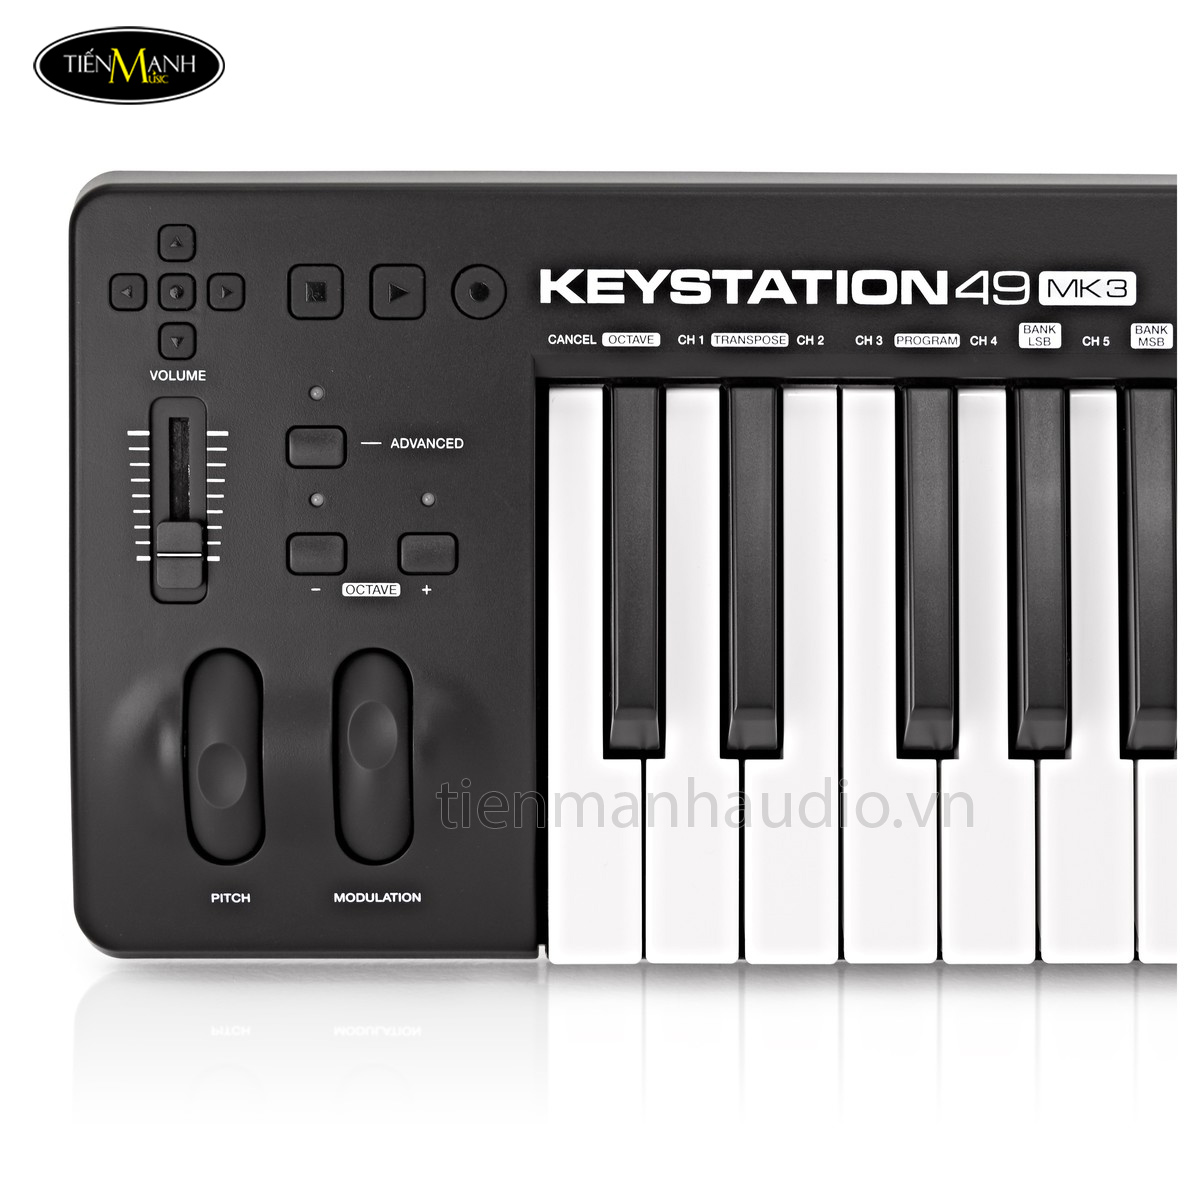 m-audio-midi-controller-keystation-49-mk3